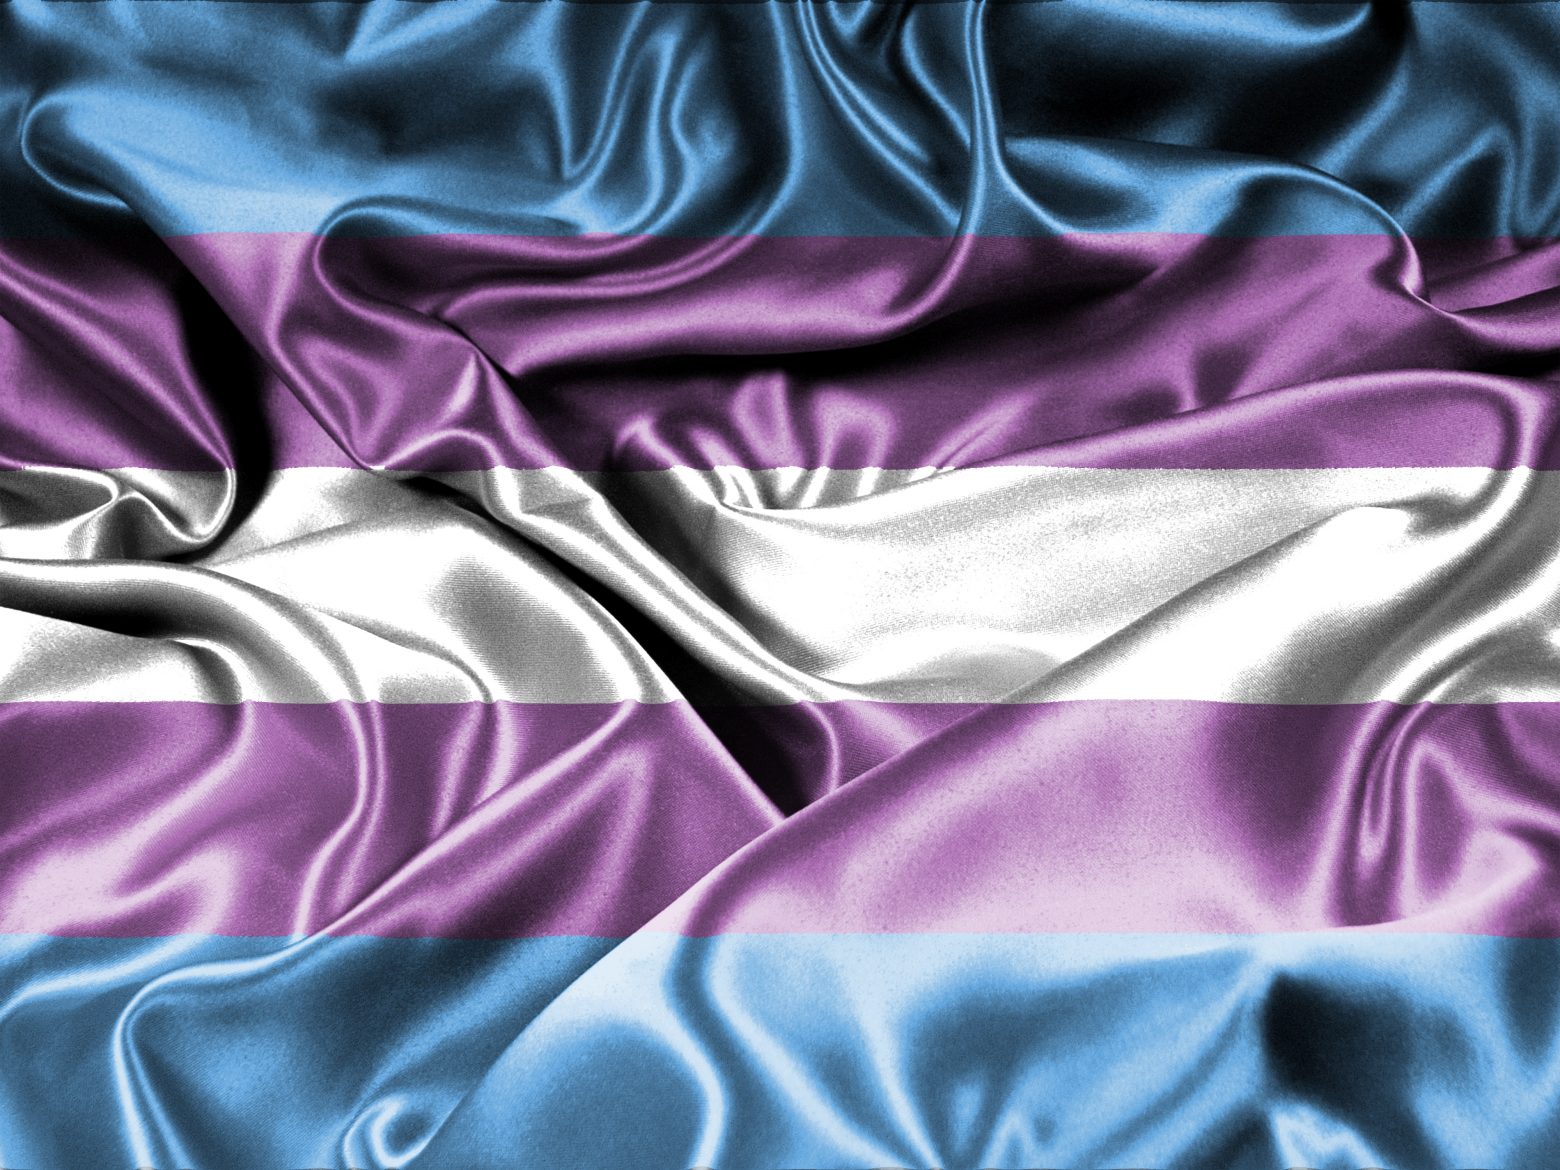 ΗΠΑ: Το 2021 είναι σε τροχιά για να γίνει η πιο θανάσιμη χρονιά για τρανς άτομα